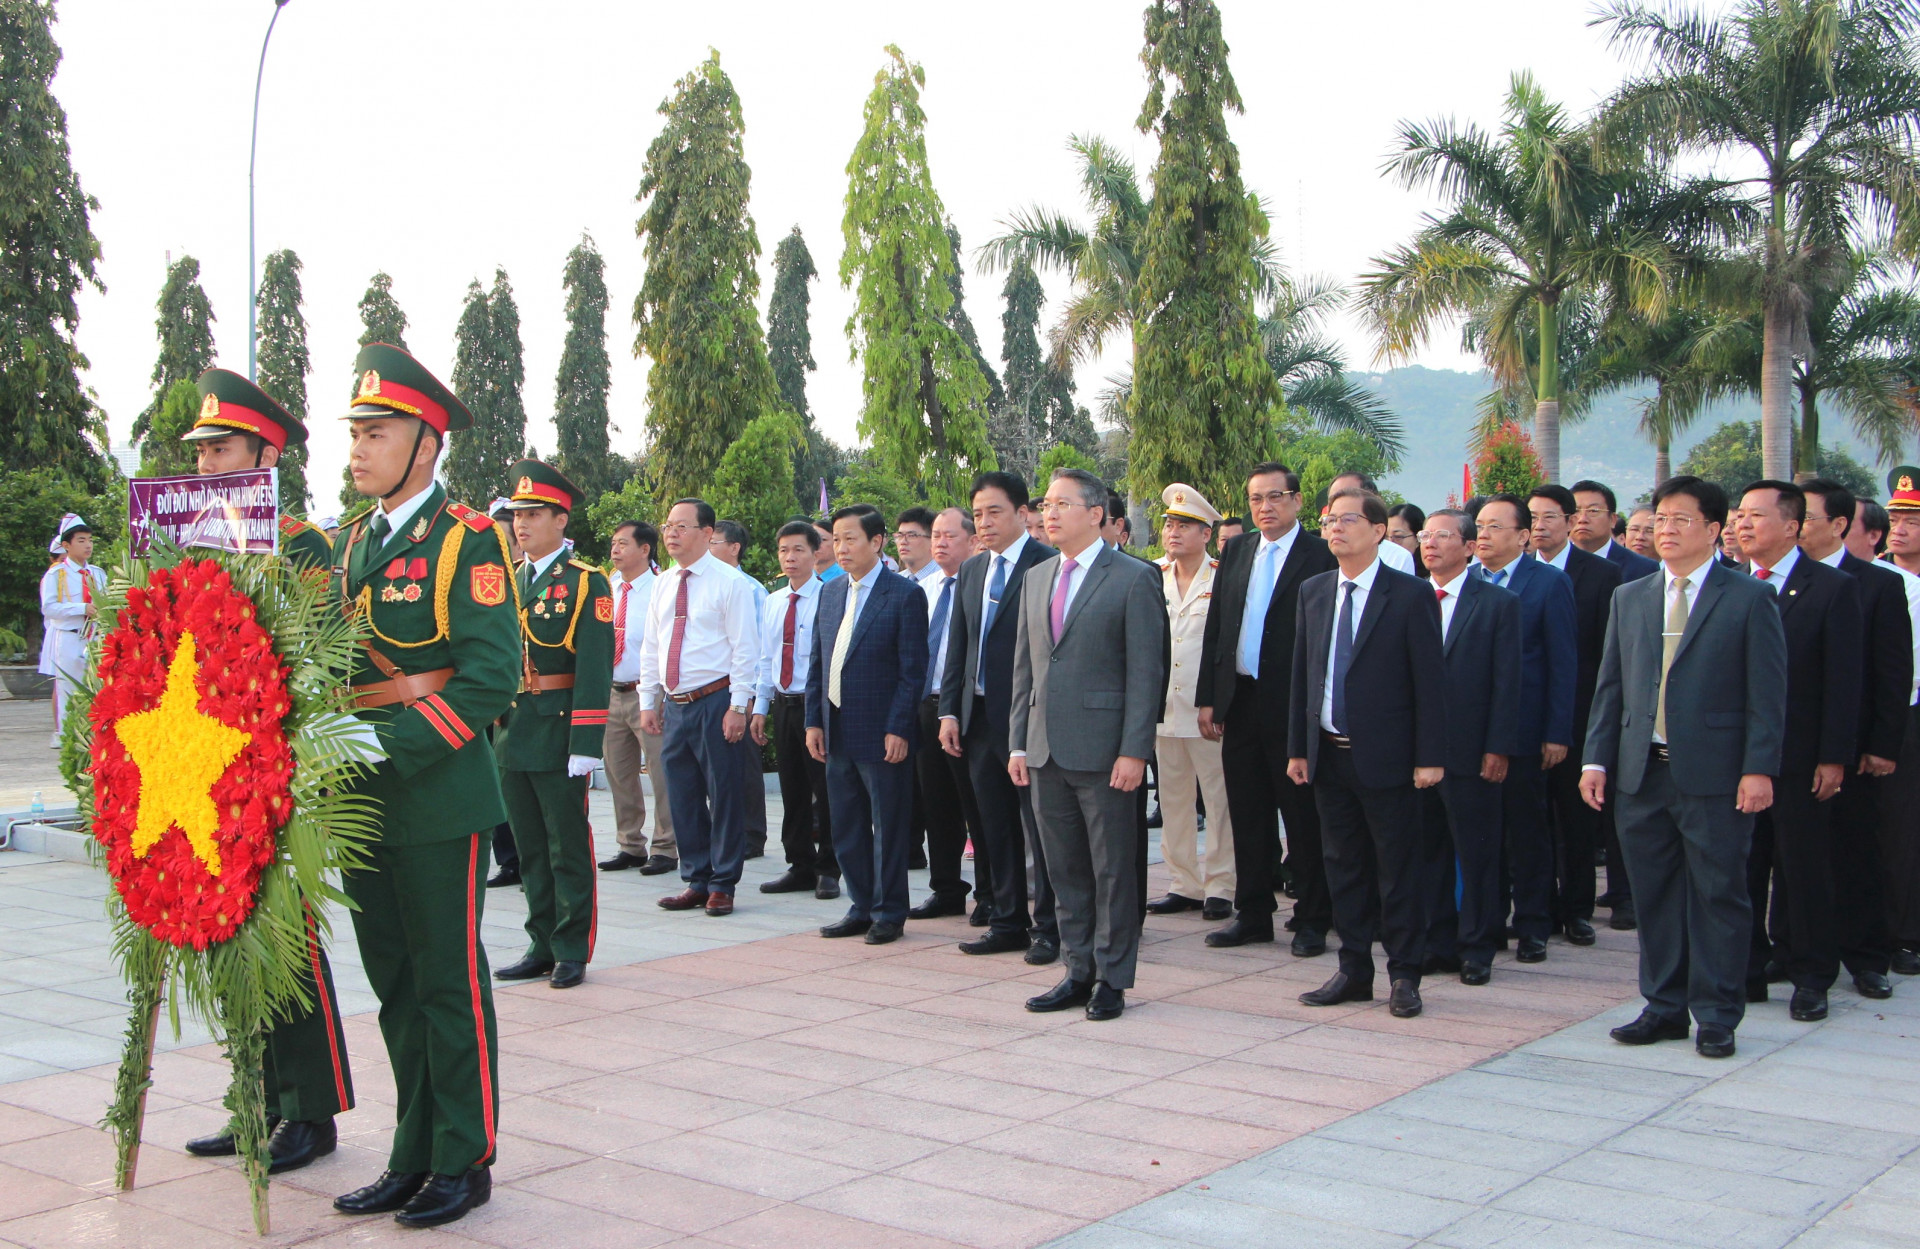 Đoàn đại biểu lãnh đạo tỉnh do đồng chí Nguyễn Hải Ninh dẫn đầu vào viếng.